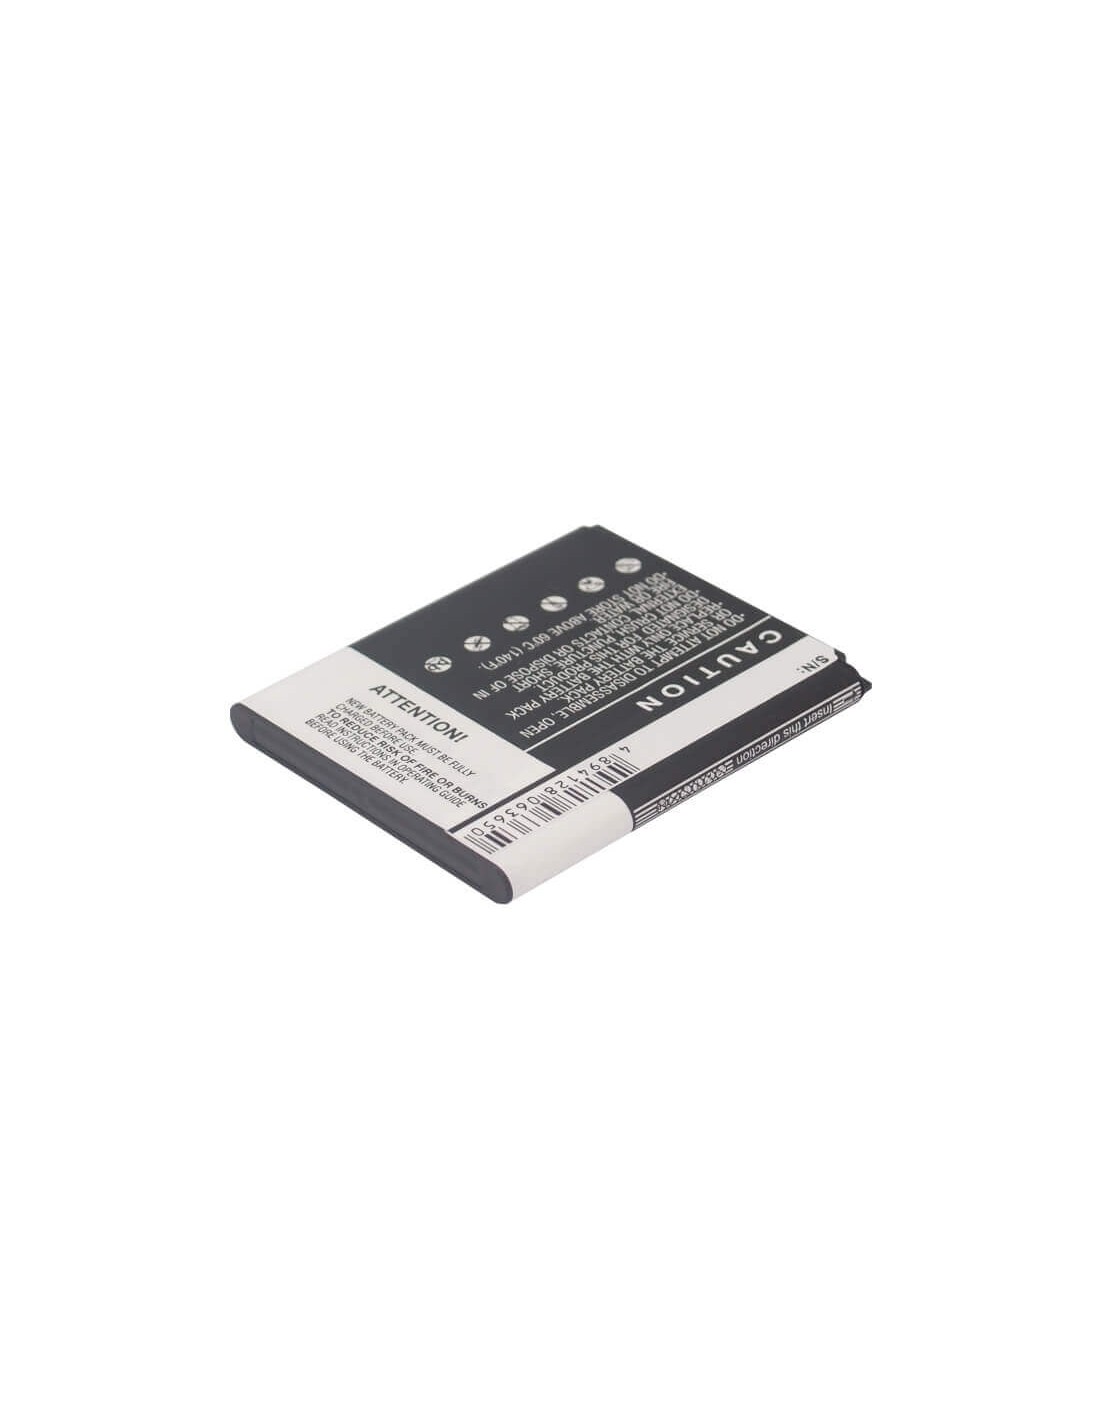 Battery for Samsung SCH-i939, Midas, GT-i9260 3.7V, 2100mAh - 7.77Wh